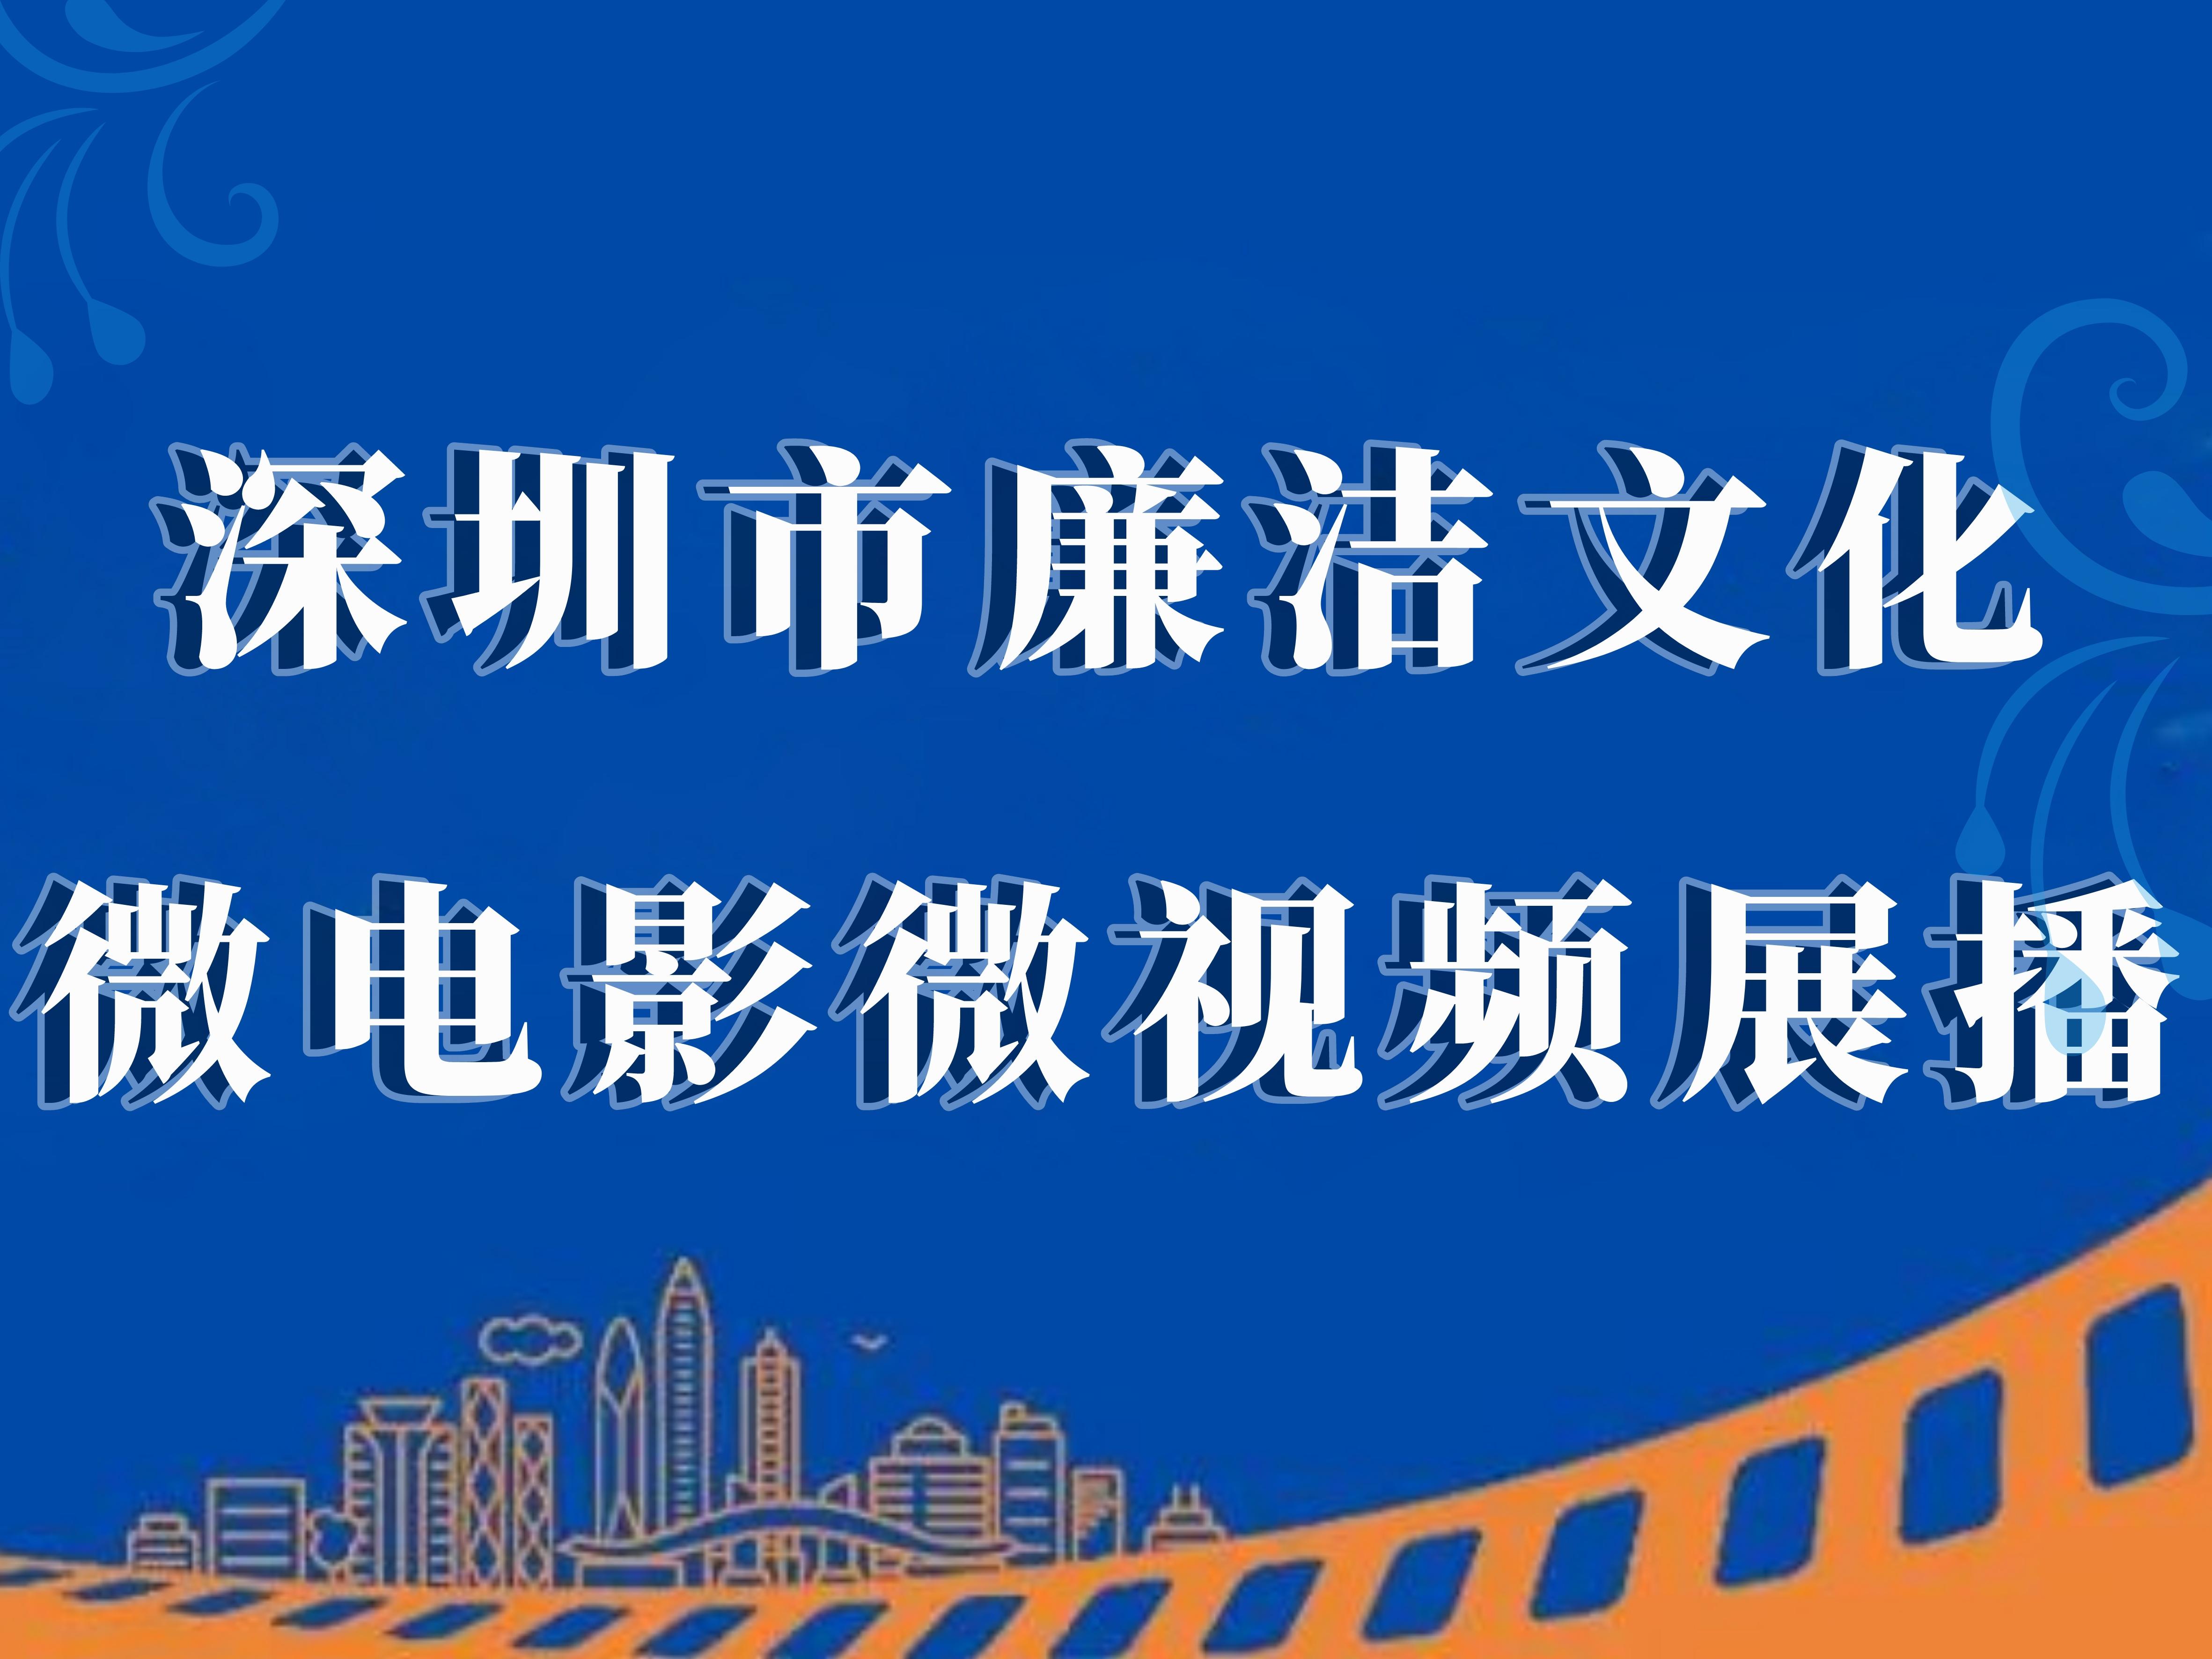 深圳市廉洁文化微电影微视频展播